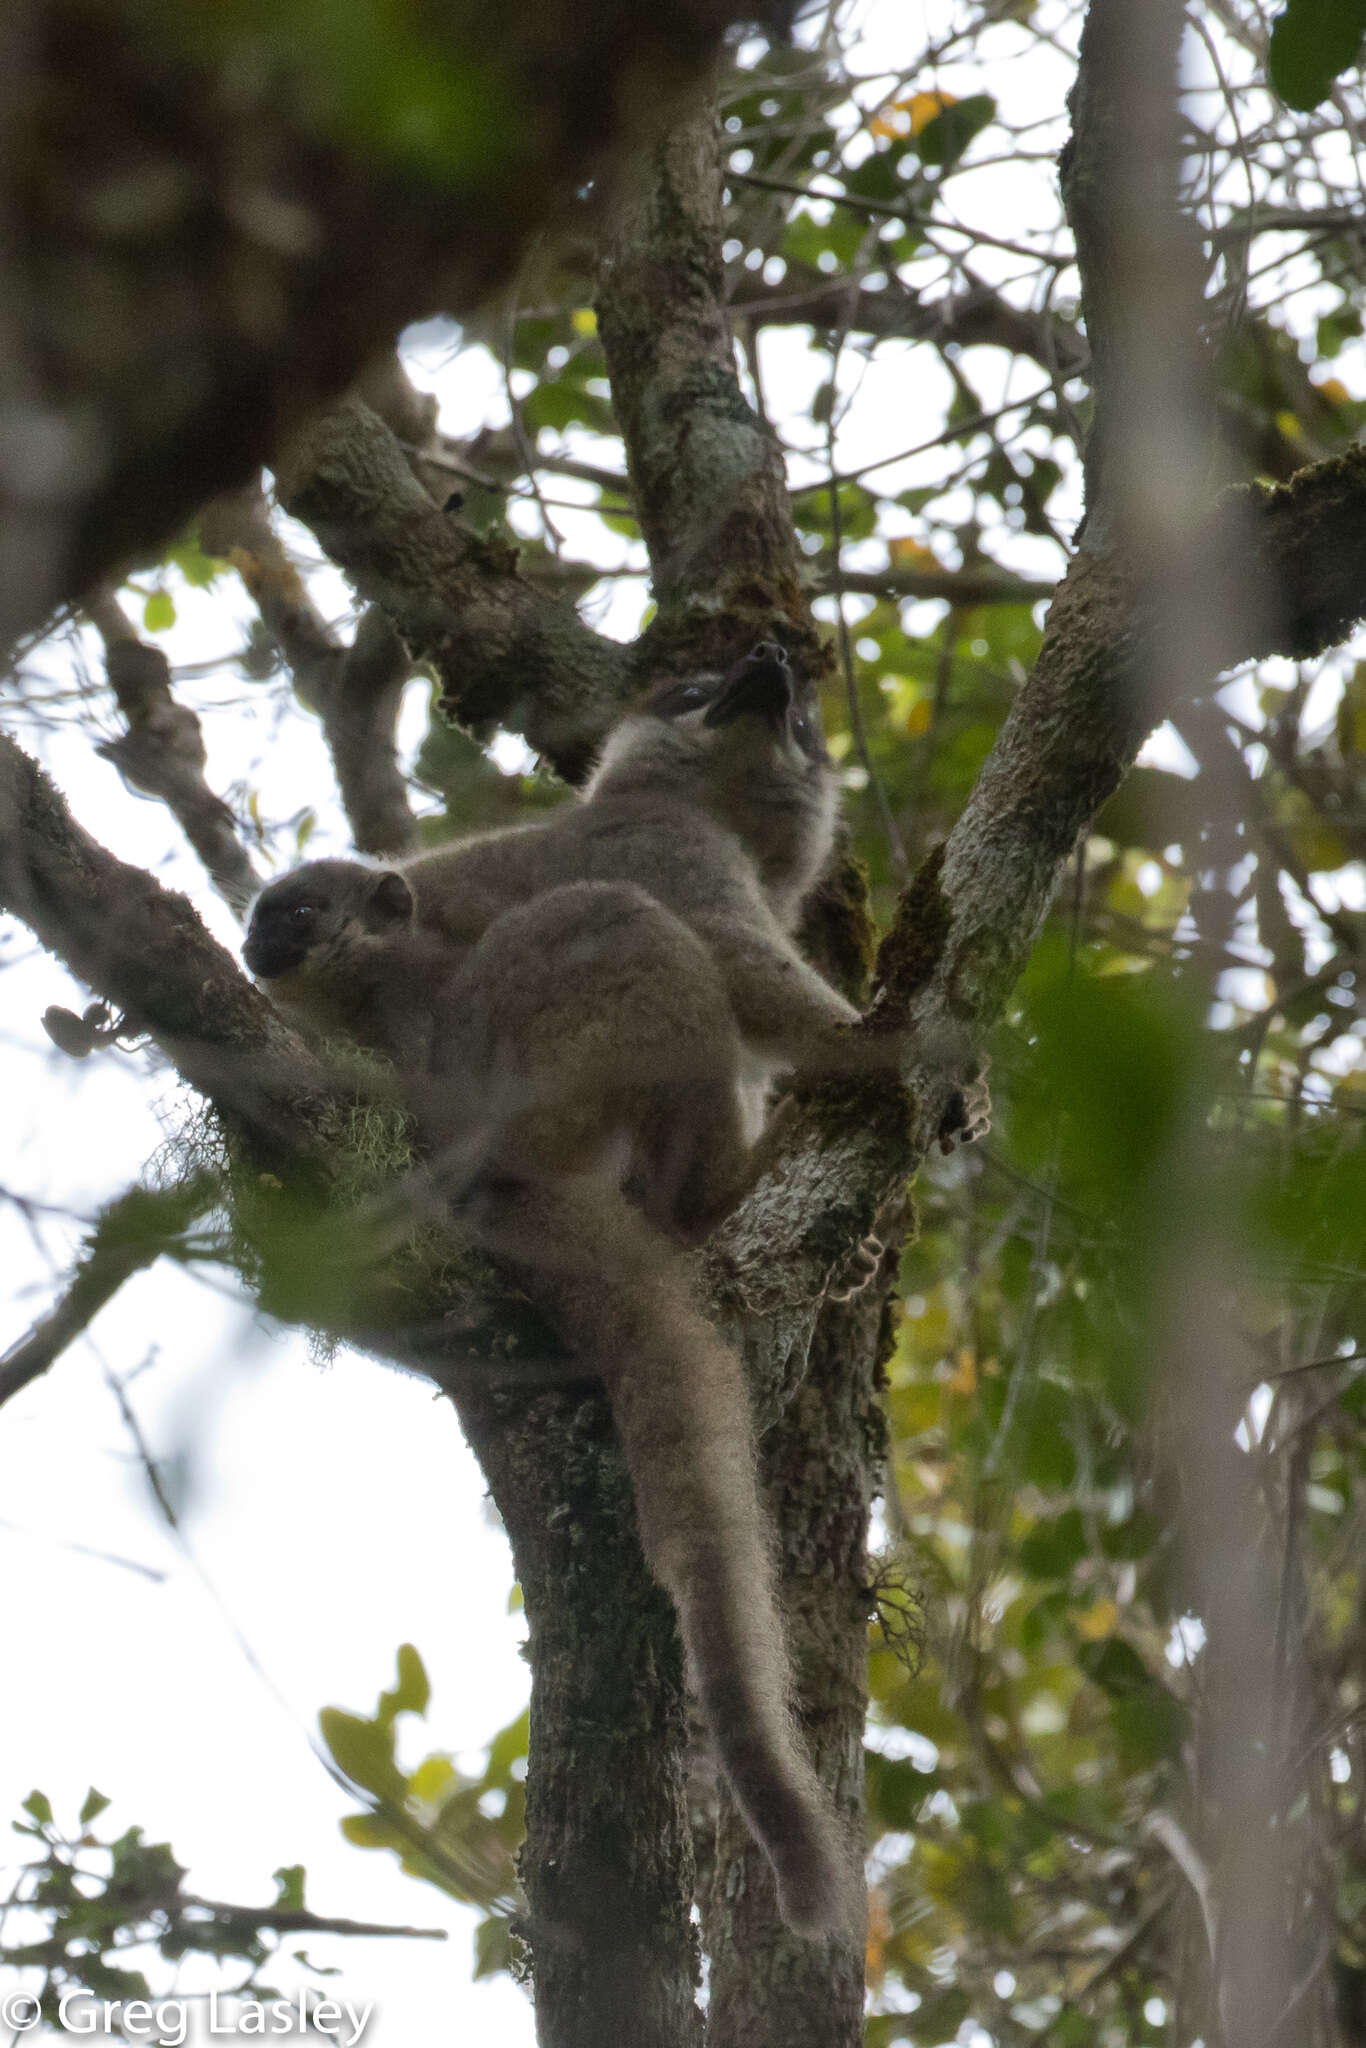 Image of brown lemur